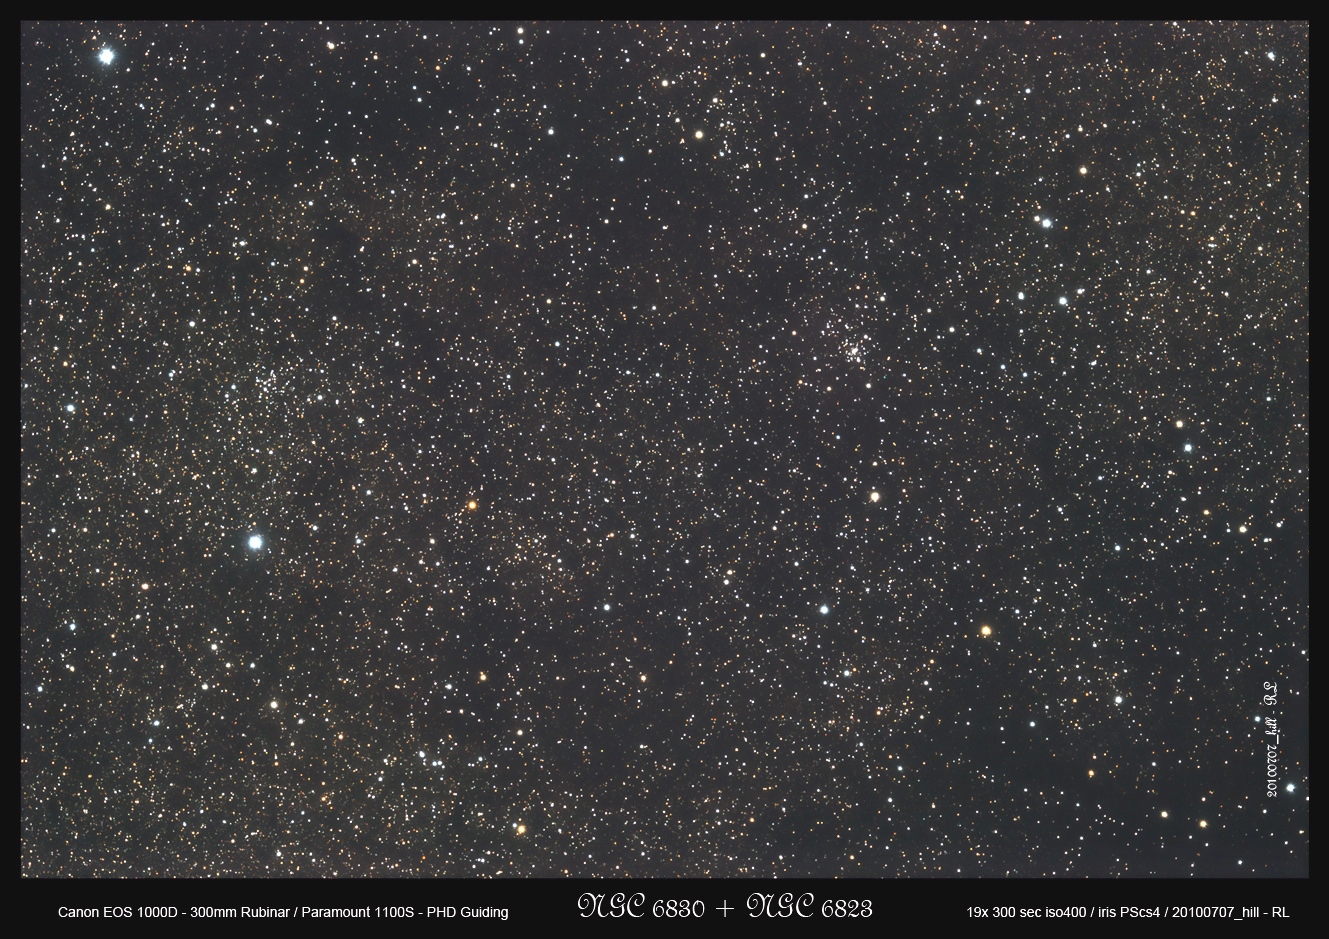 NGC 6823